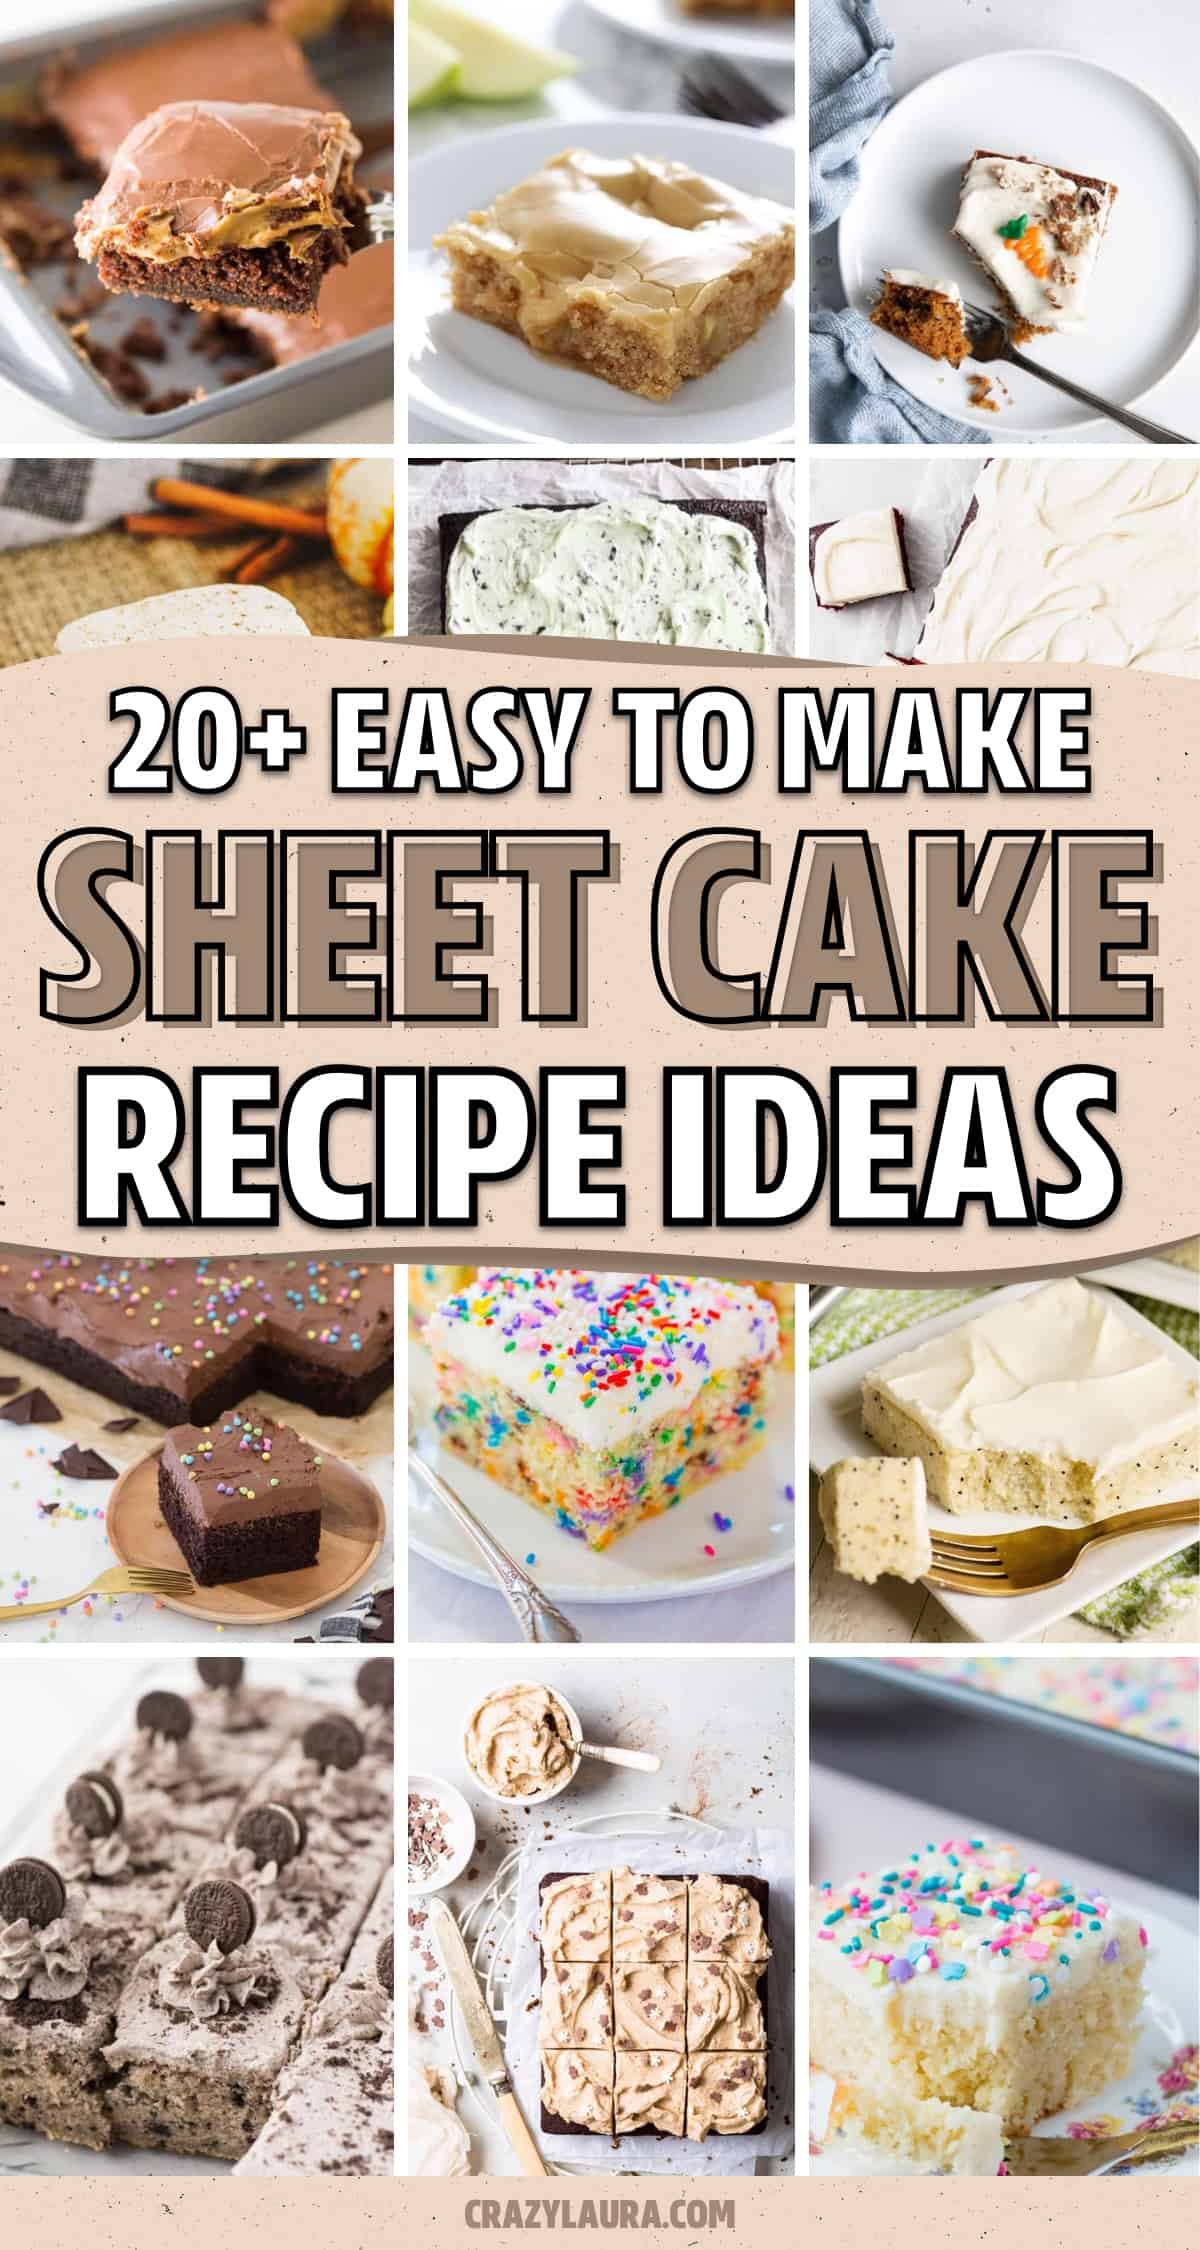 sheet cake ideas to bake